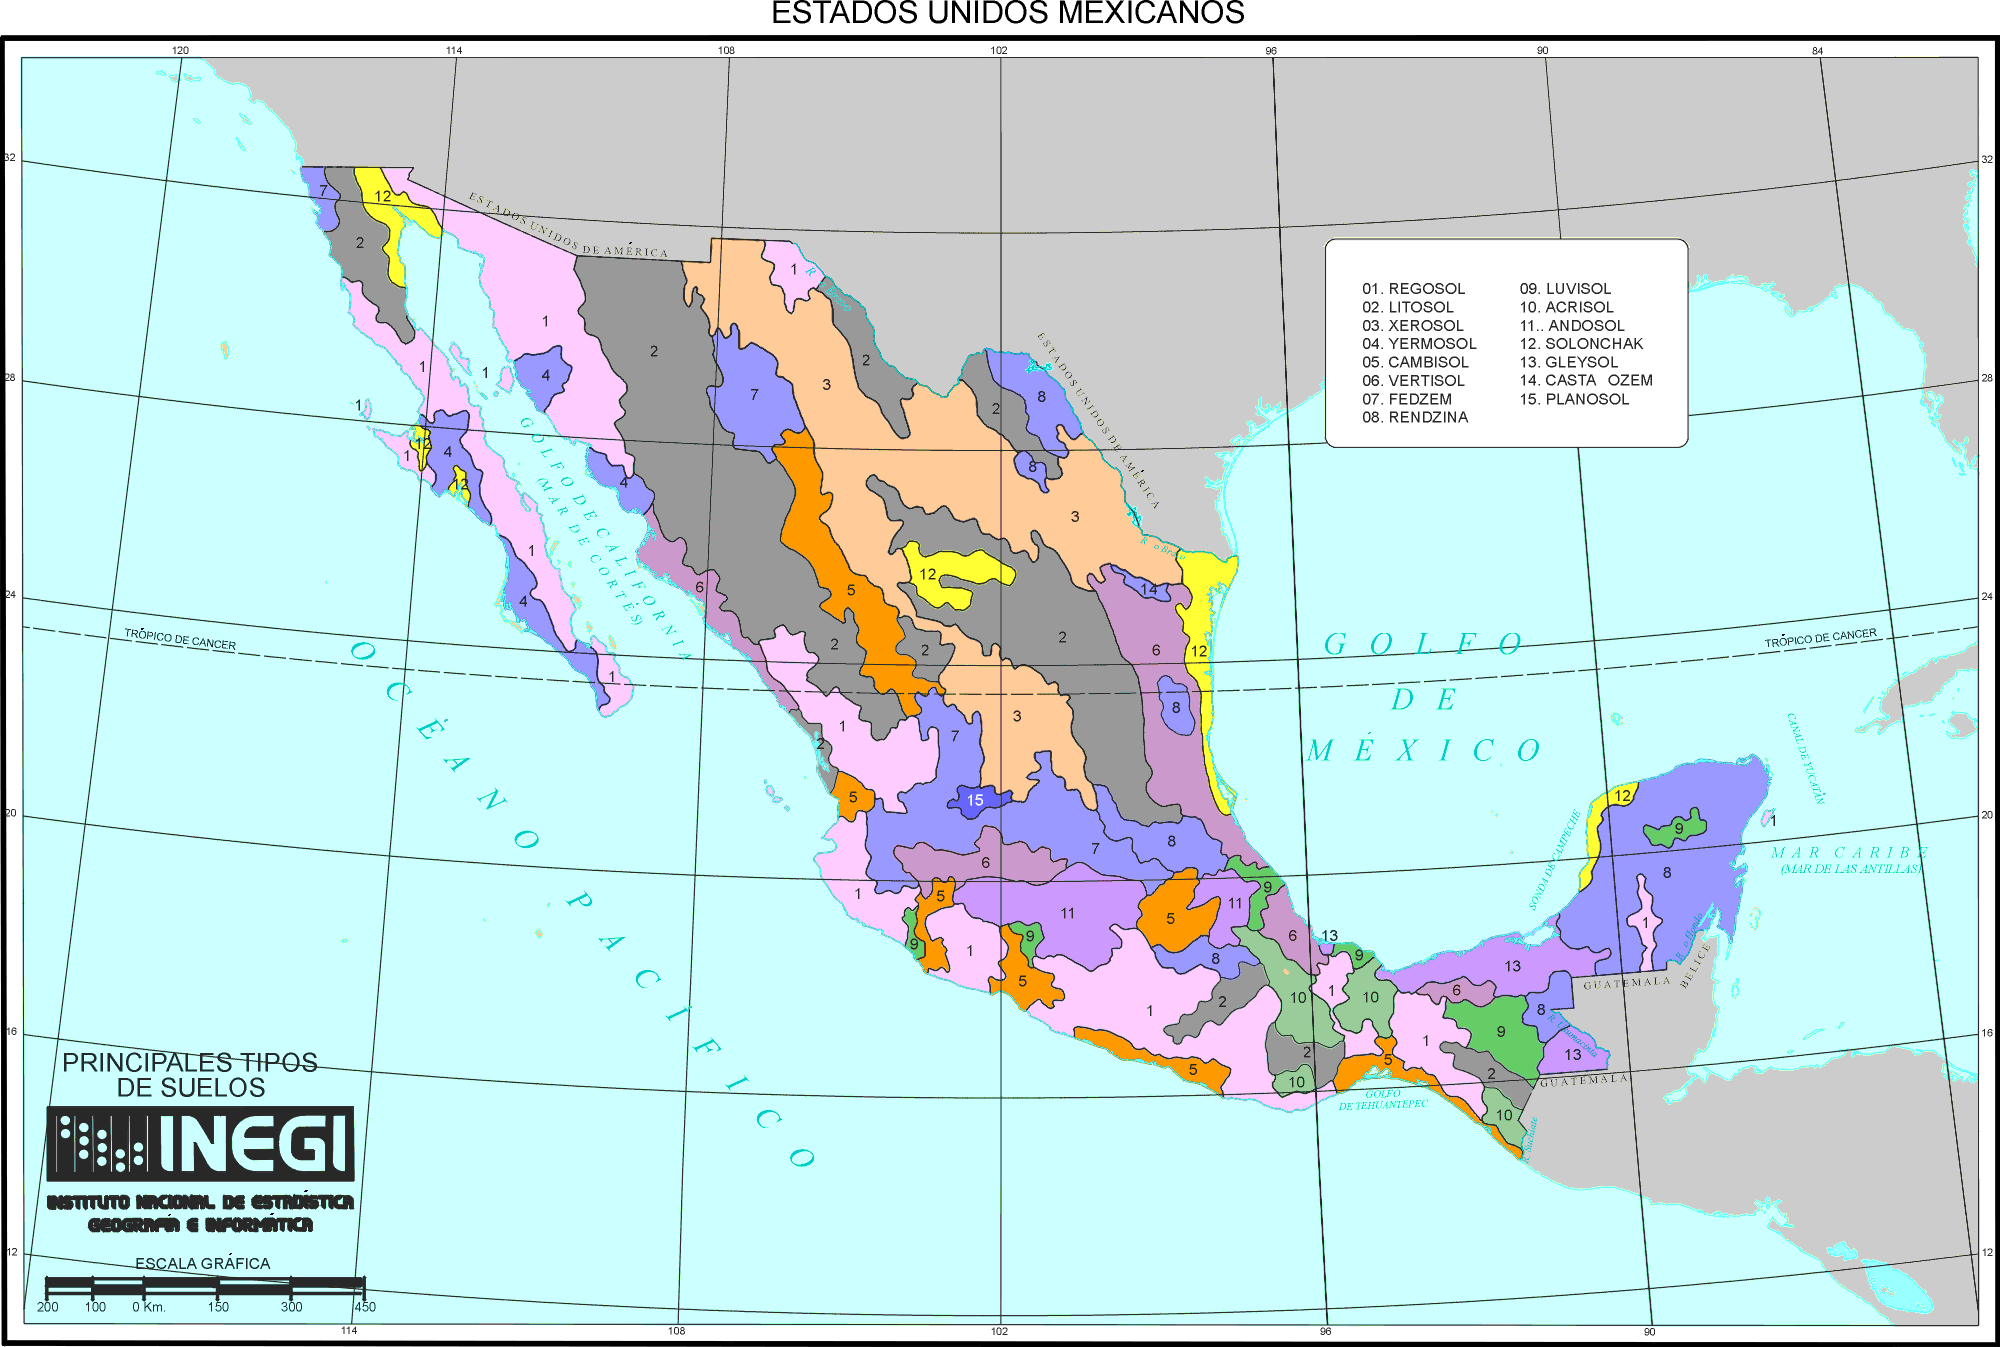 mexico-mapa-de-suelos-principles-fuente-inegi